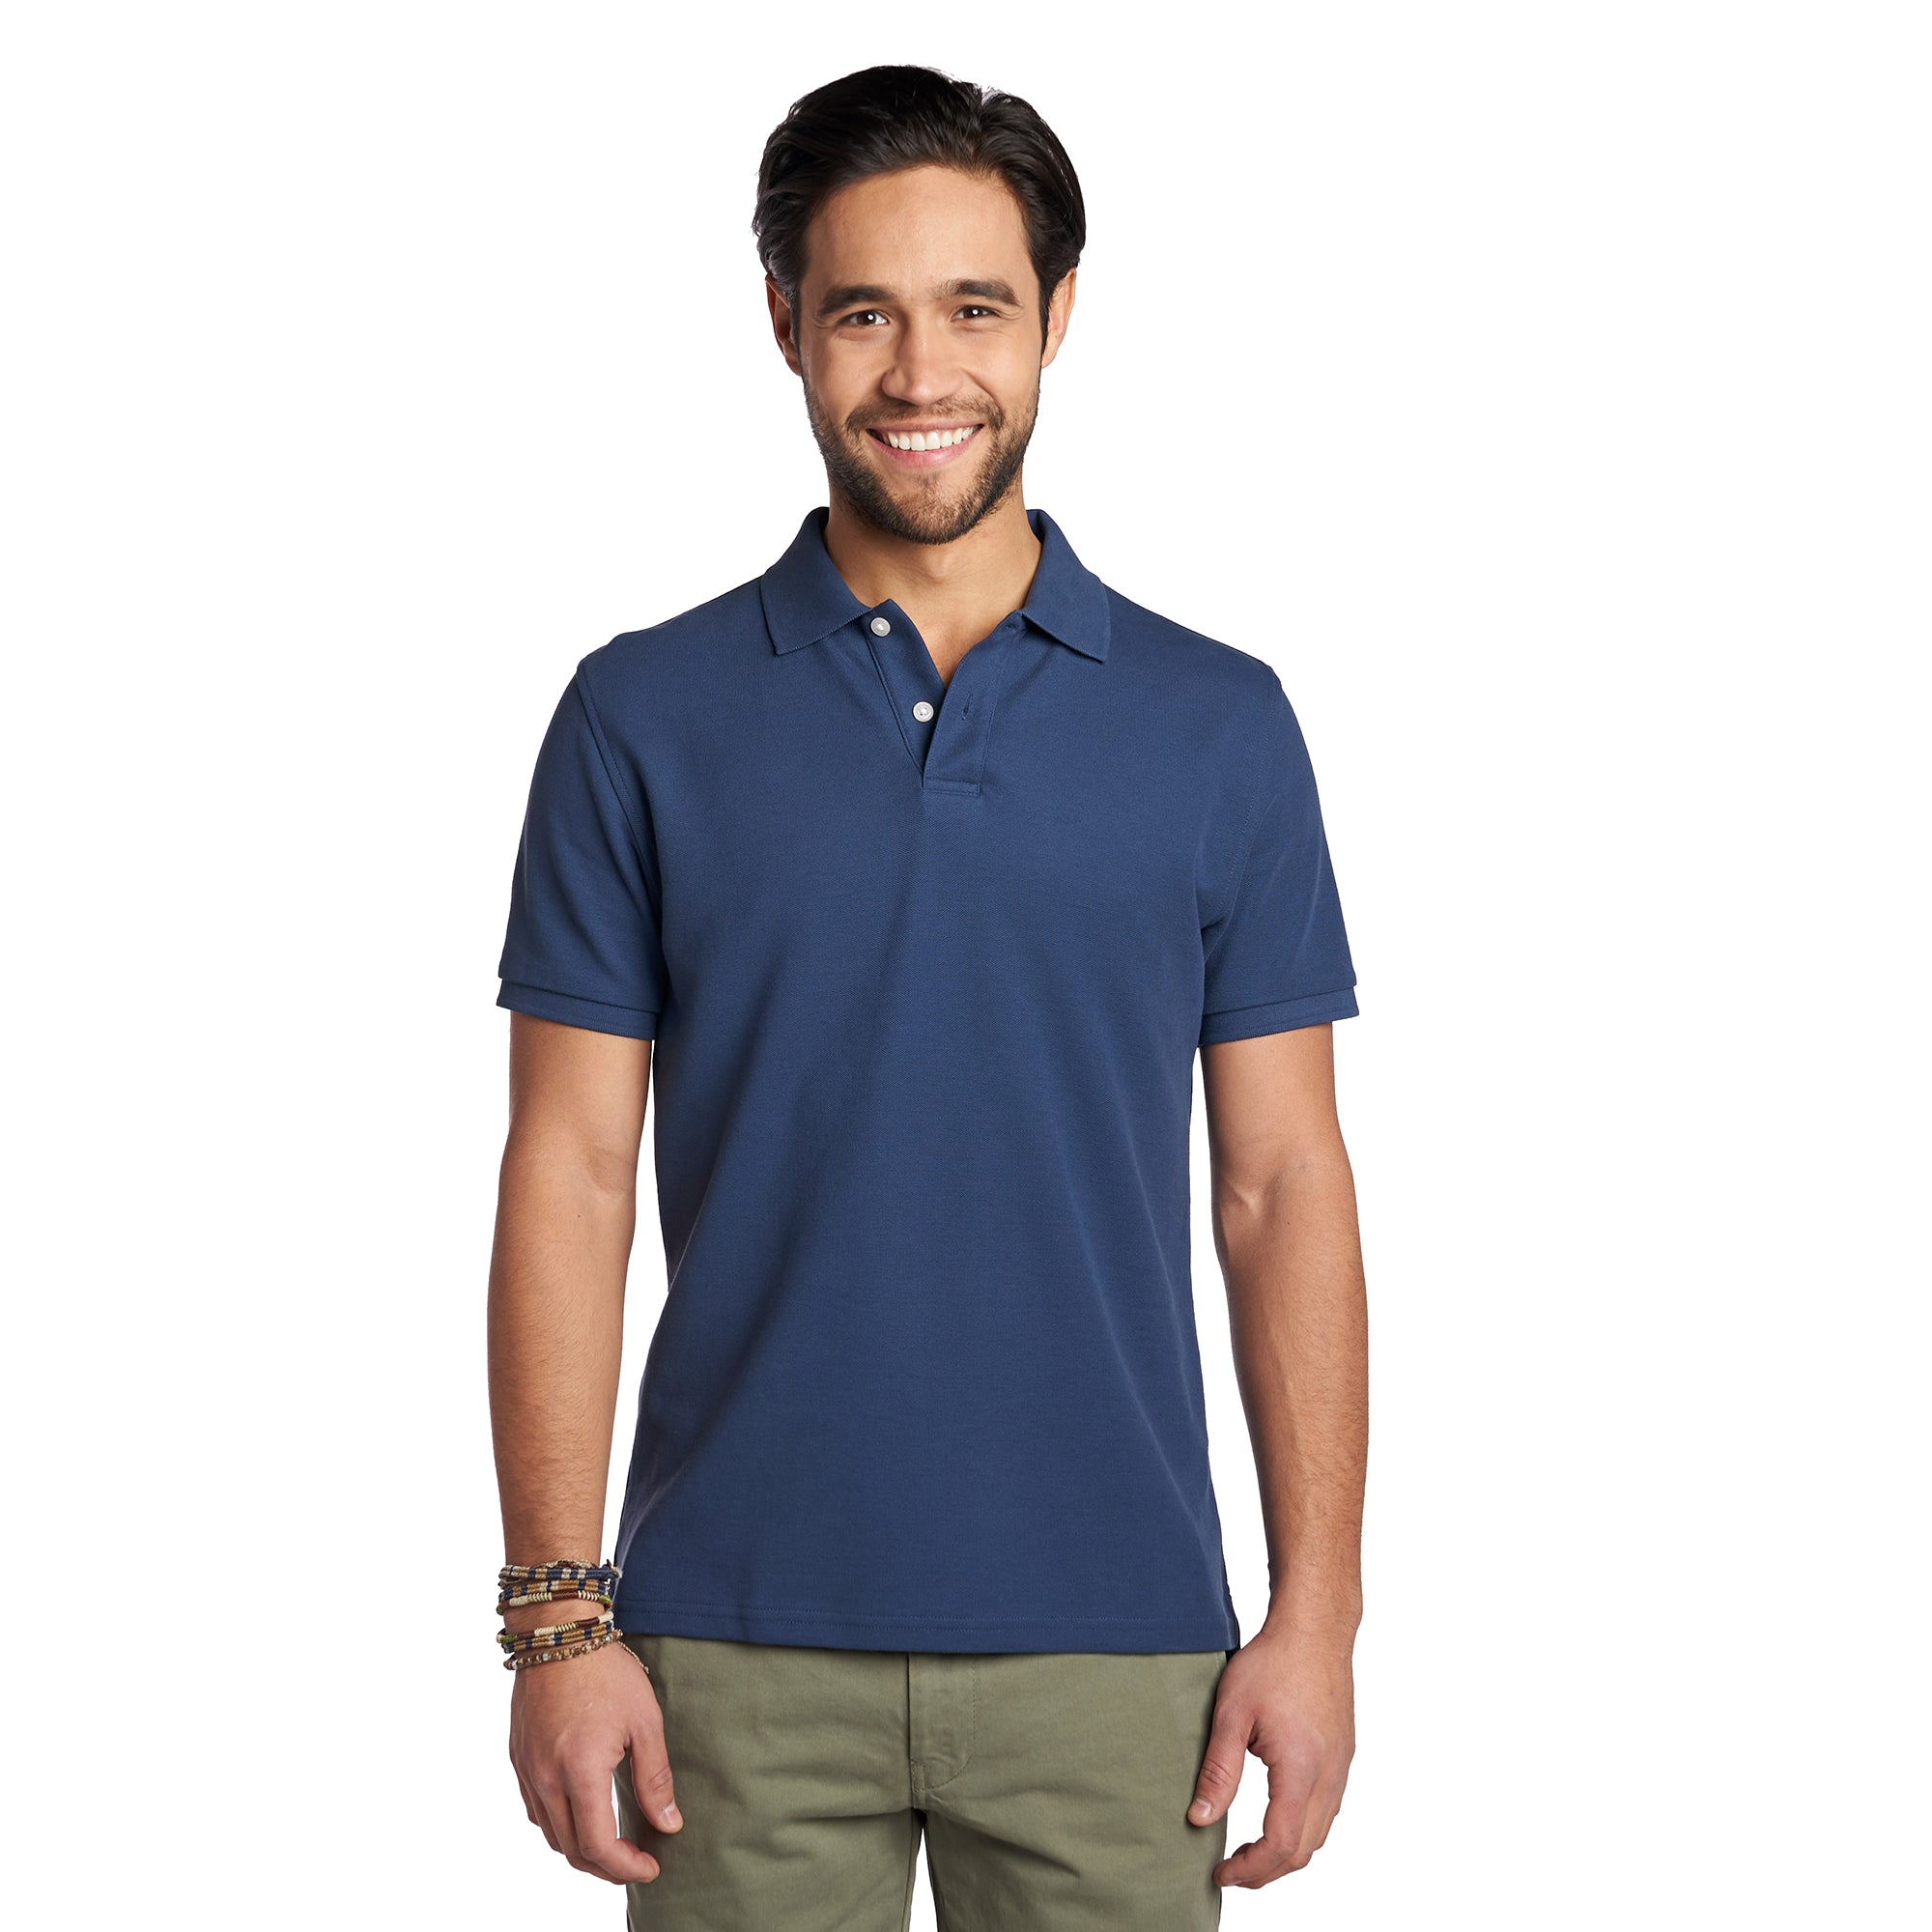 James Polo Shirt - Navy